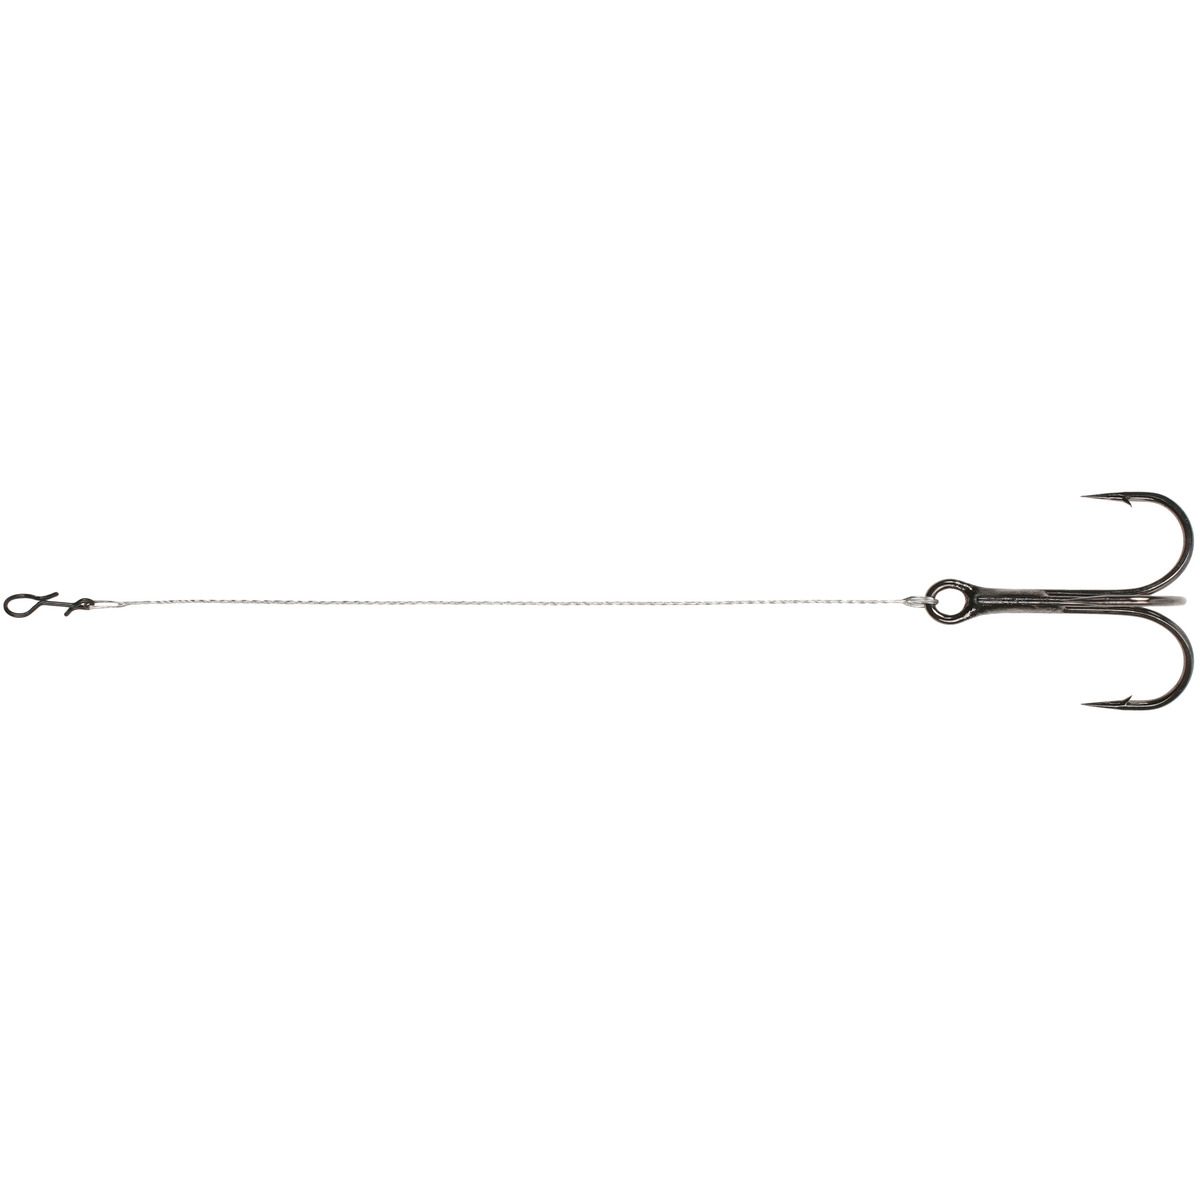 Mikado Ph Steel - 11 cmx14kg  treble hook: 1 / 0